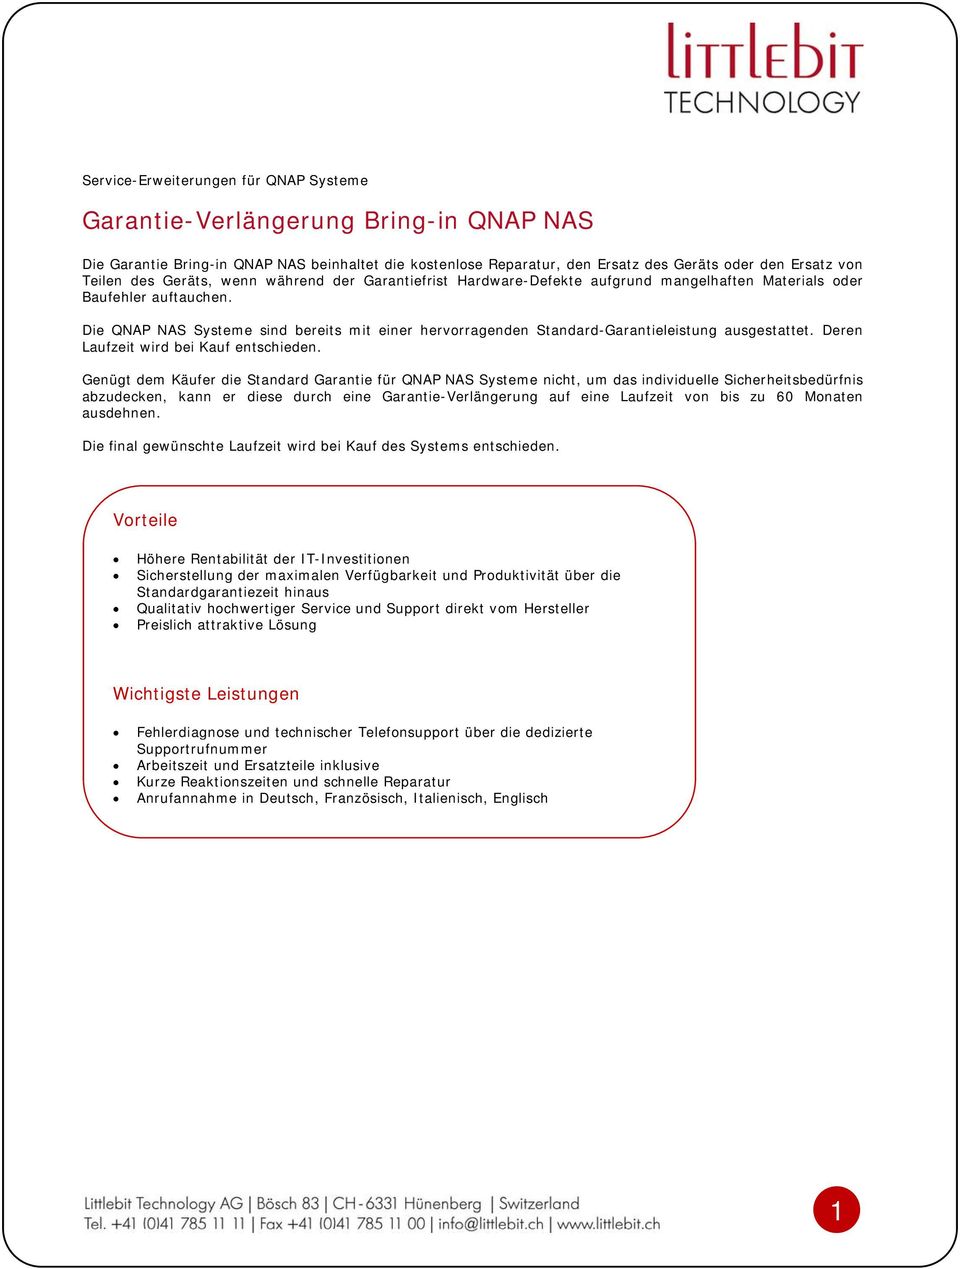 Die QNAP NAS Systeme sind bereits mit einer hervorragenden Standard-Garantieleistung ausgestattet. Deren Laufzeit wird bei Kauf entschieden.